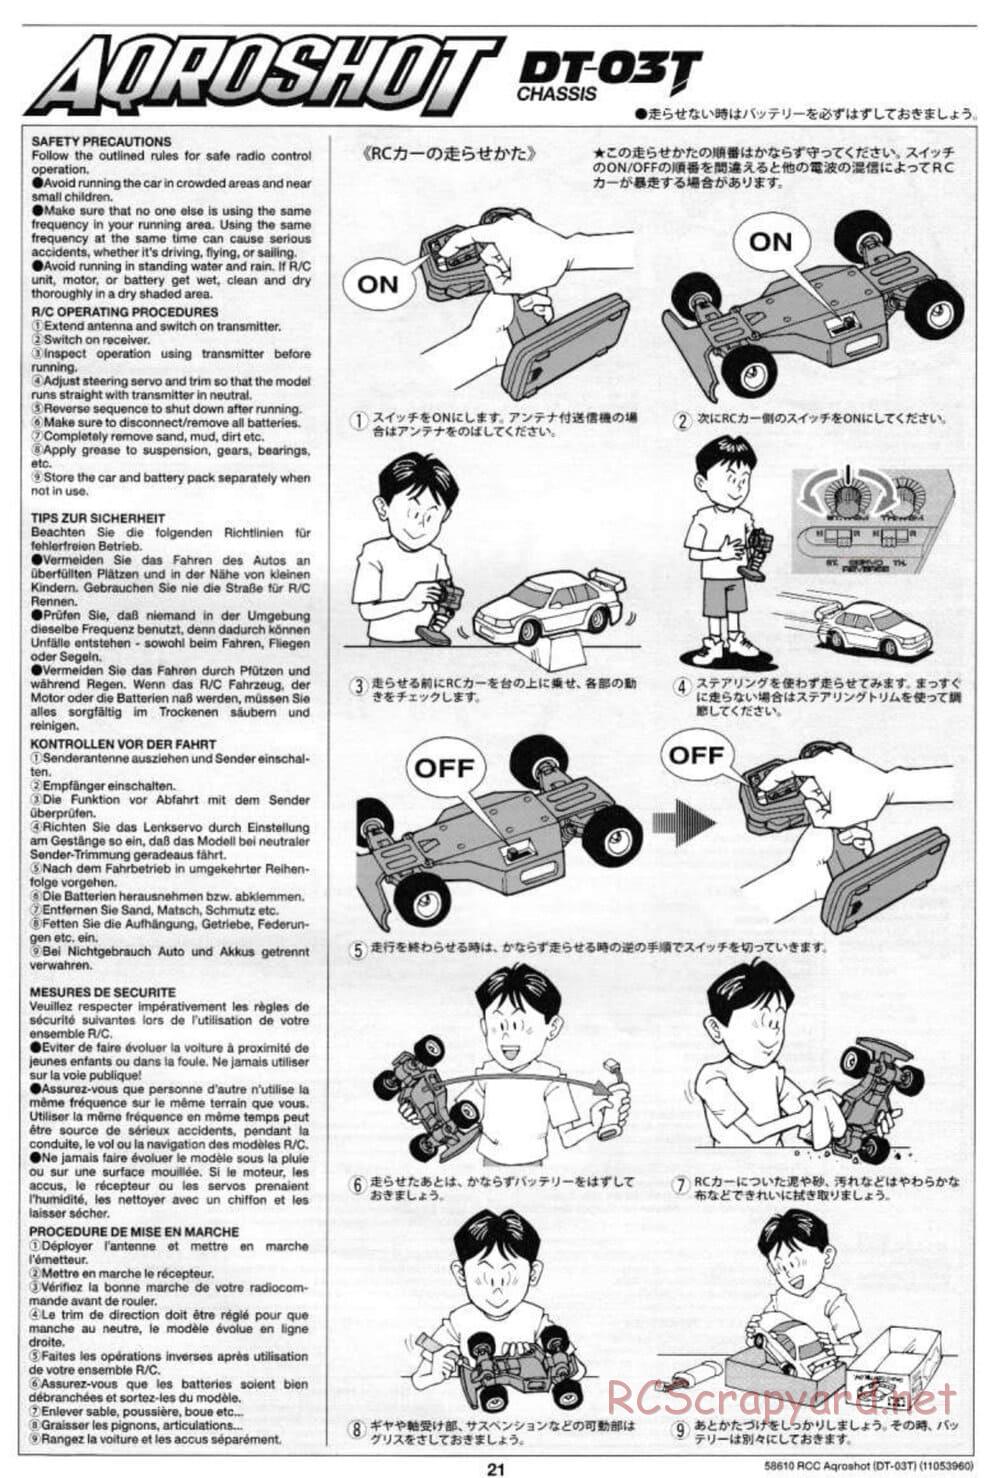 Tamiya - Aqroshot Chassis - Manual - Page 21